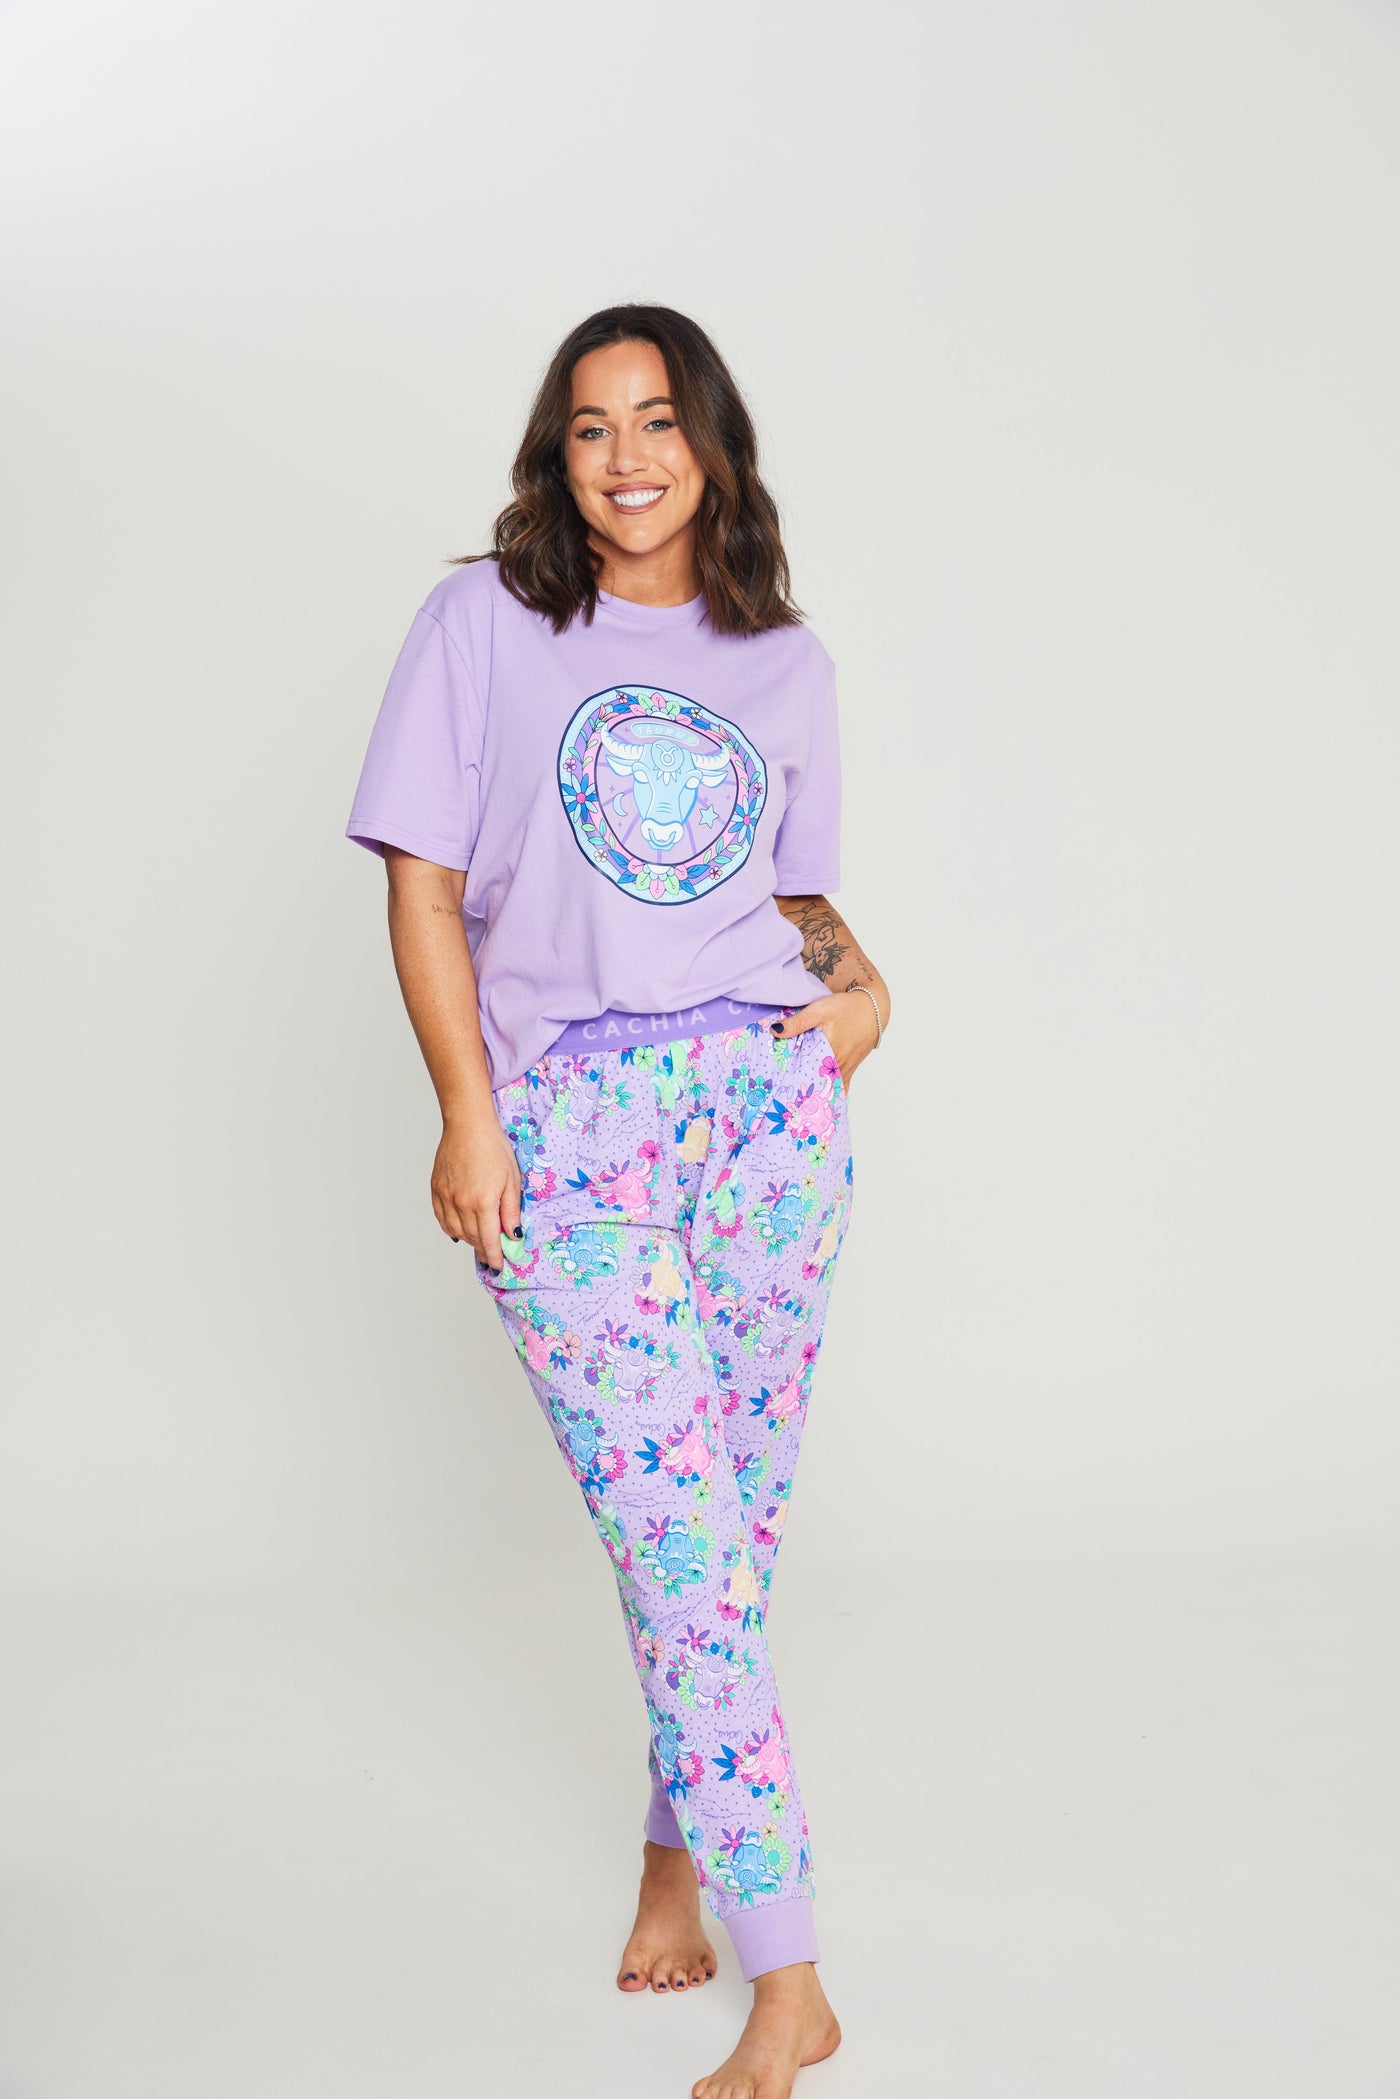 Cachia Taurus - Zodiac Pyjama Bundle Pajamas